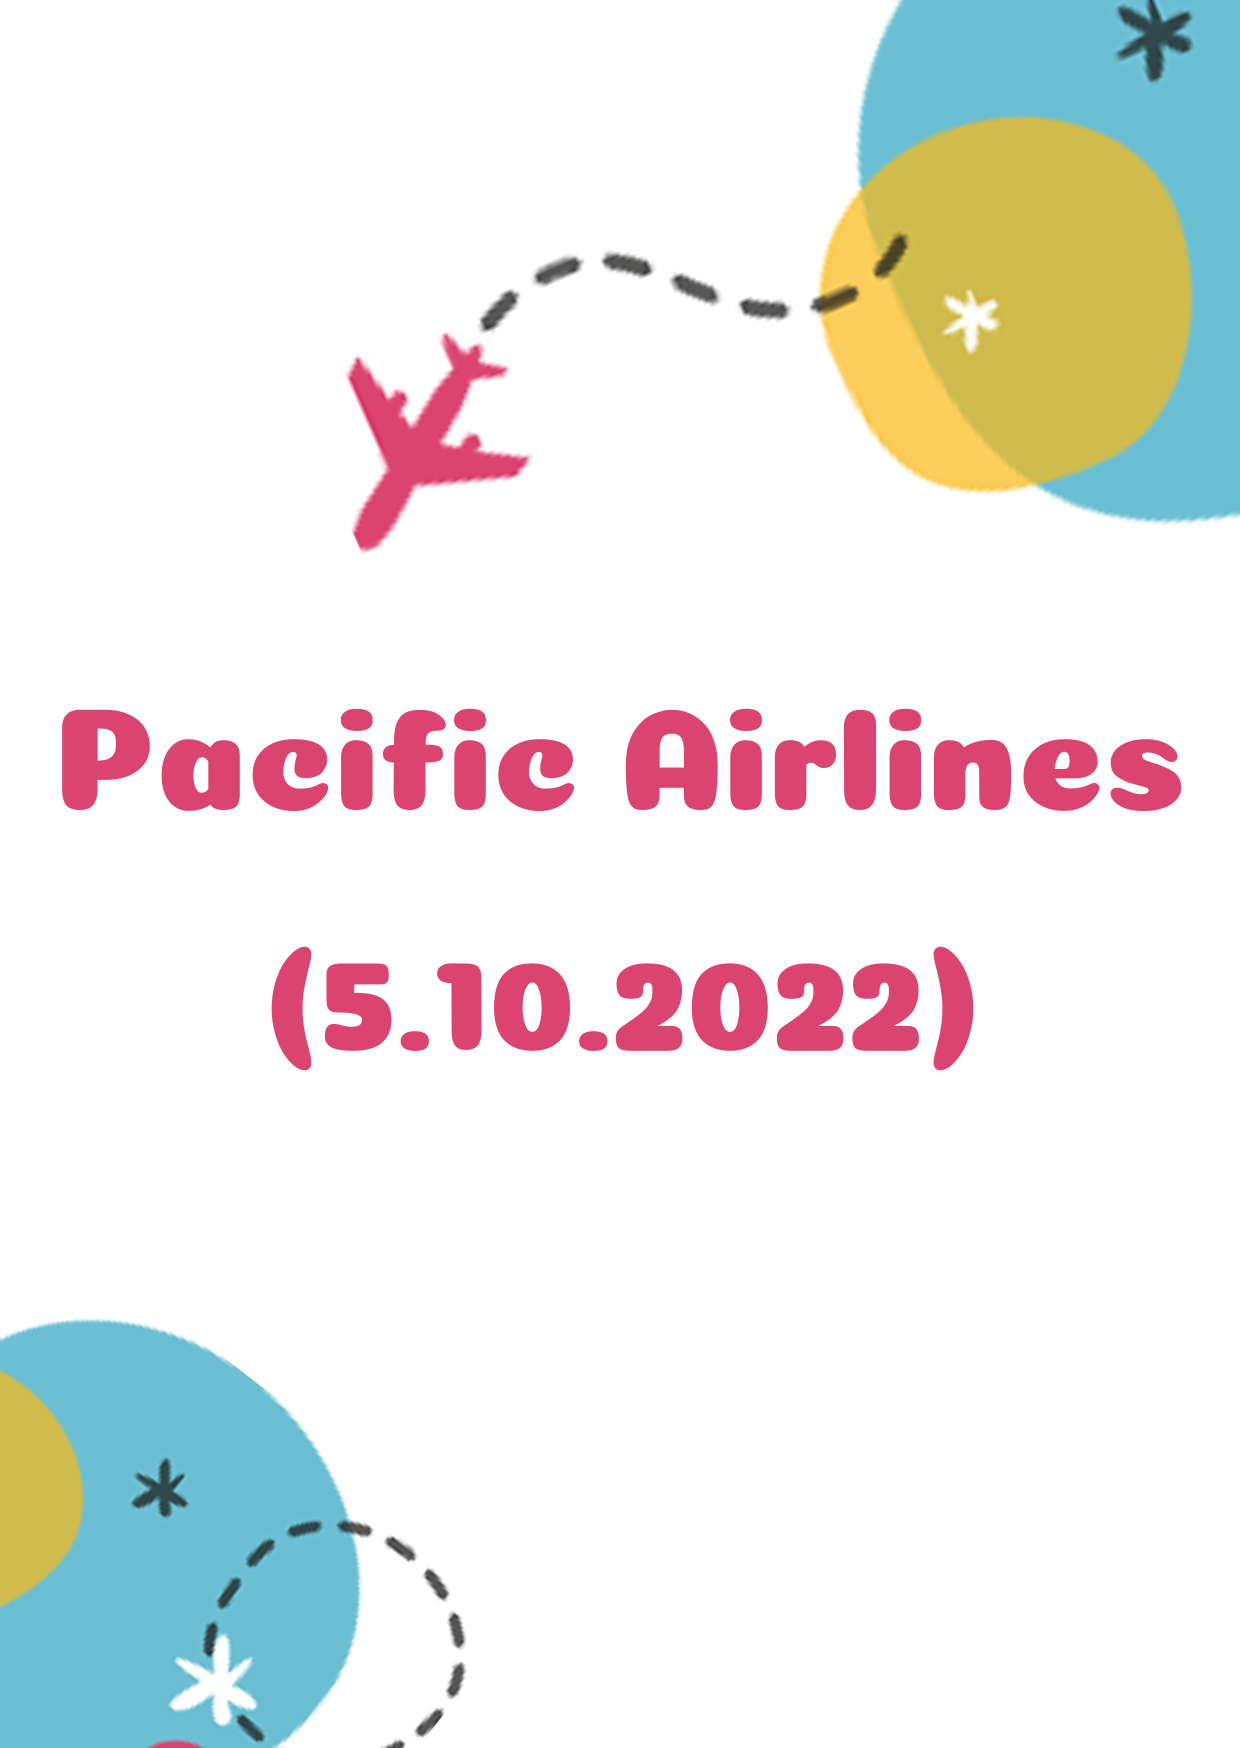 Giá vé máy bay Pacific Airlines: Chừng nào lại có giá dưới 1 triệu đồng?